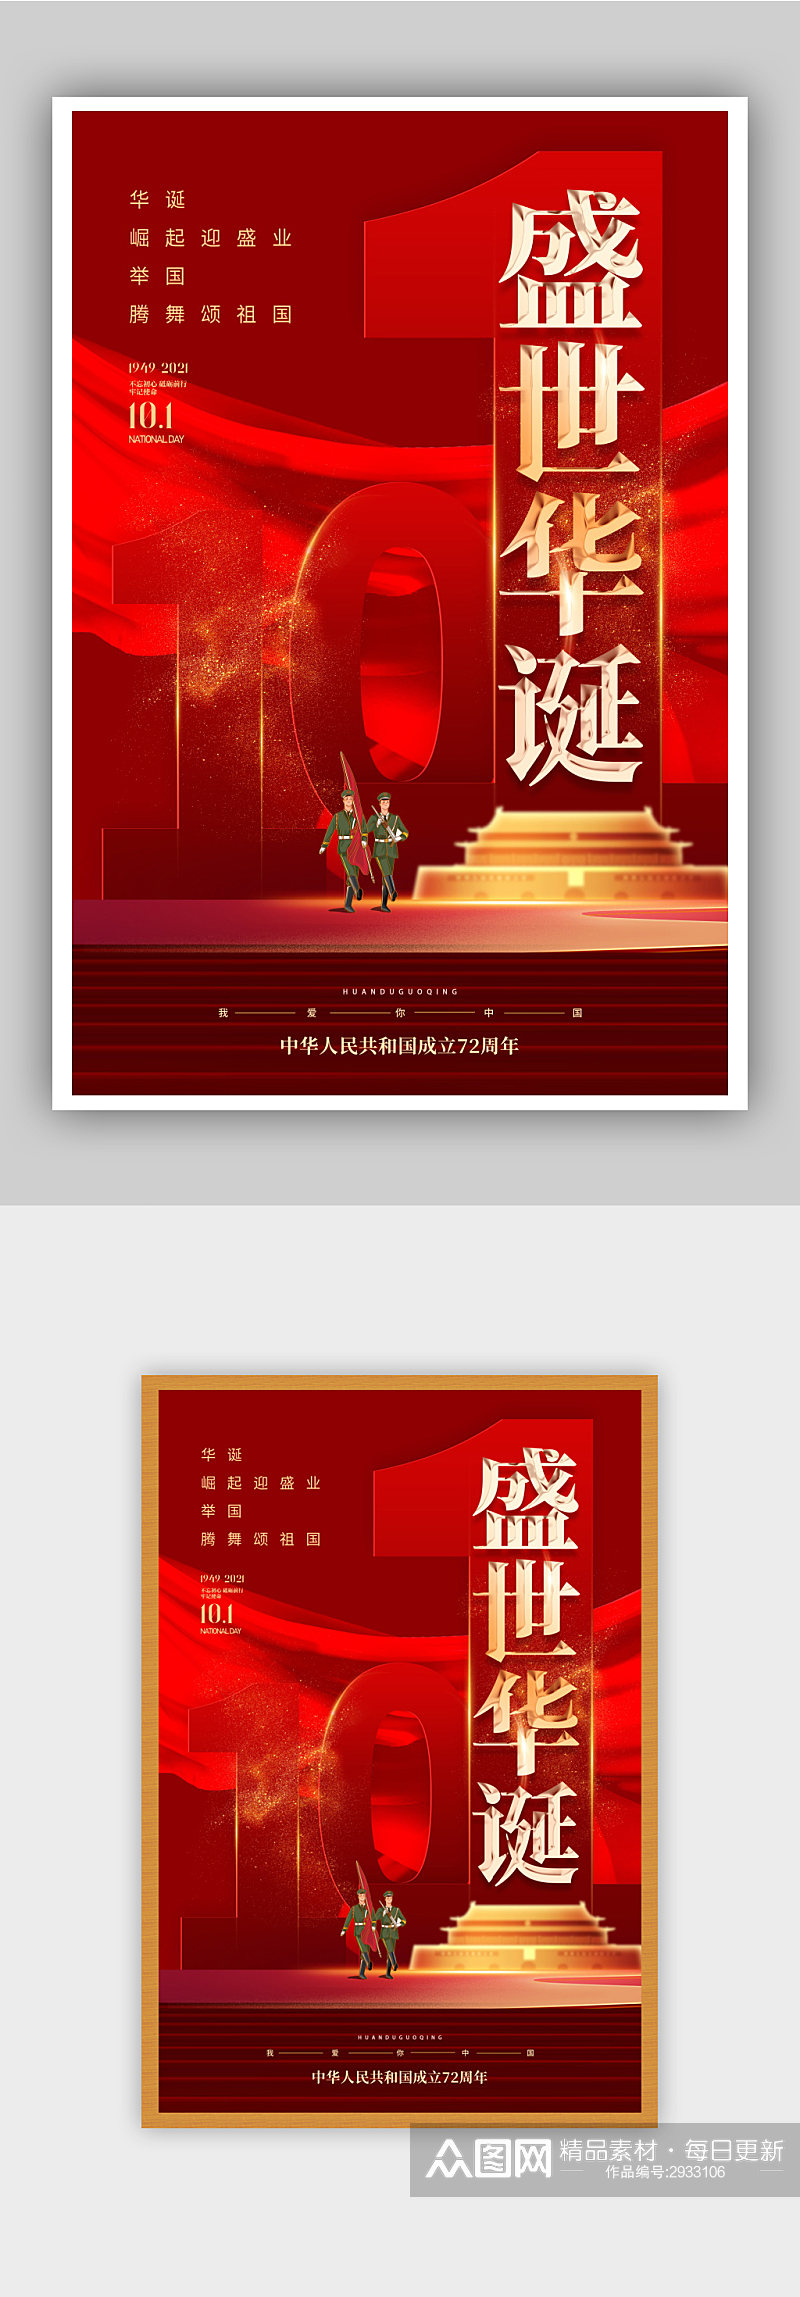 红色大气国庆节建国72周年主题海报素材